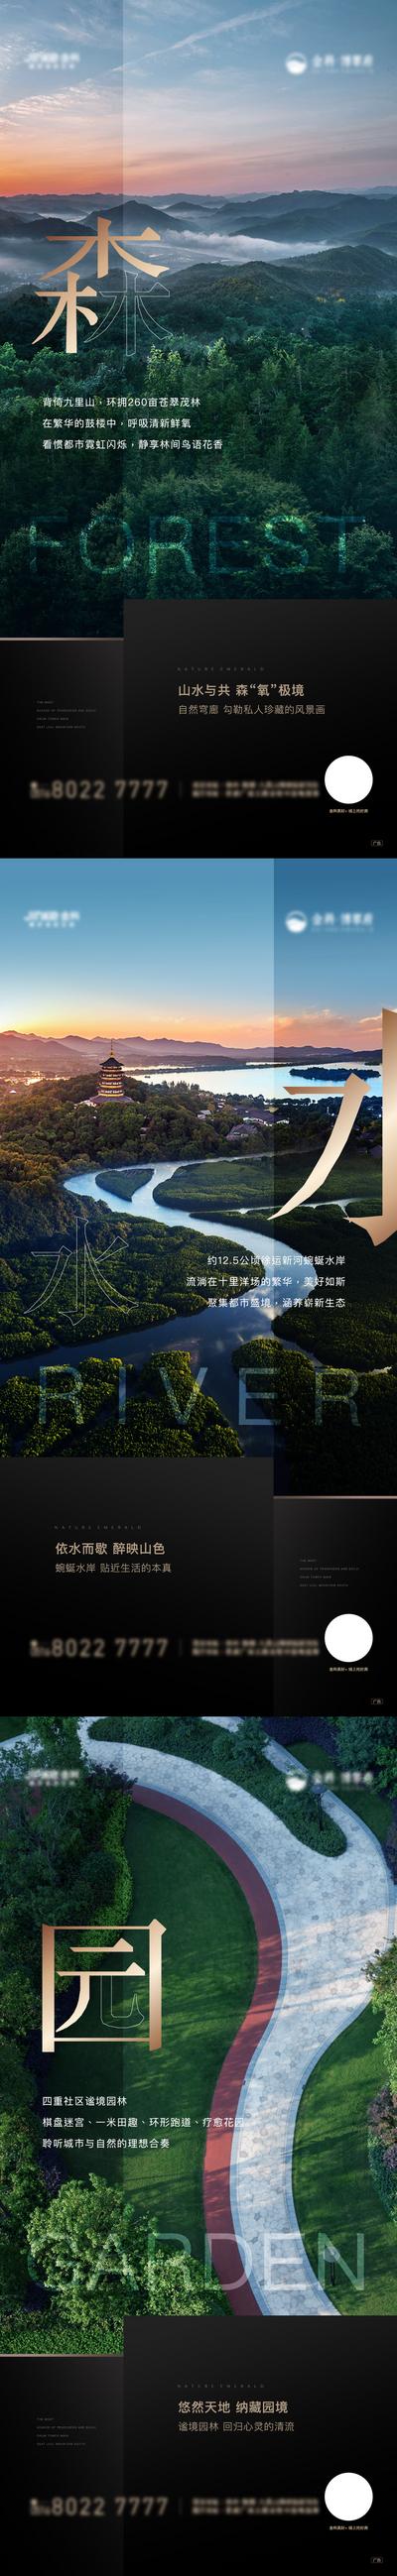 南门网 海报 房地产 健康观  森林   景观  配套  价值点  风景 文字